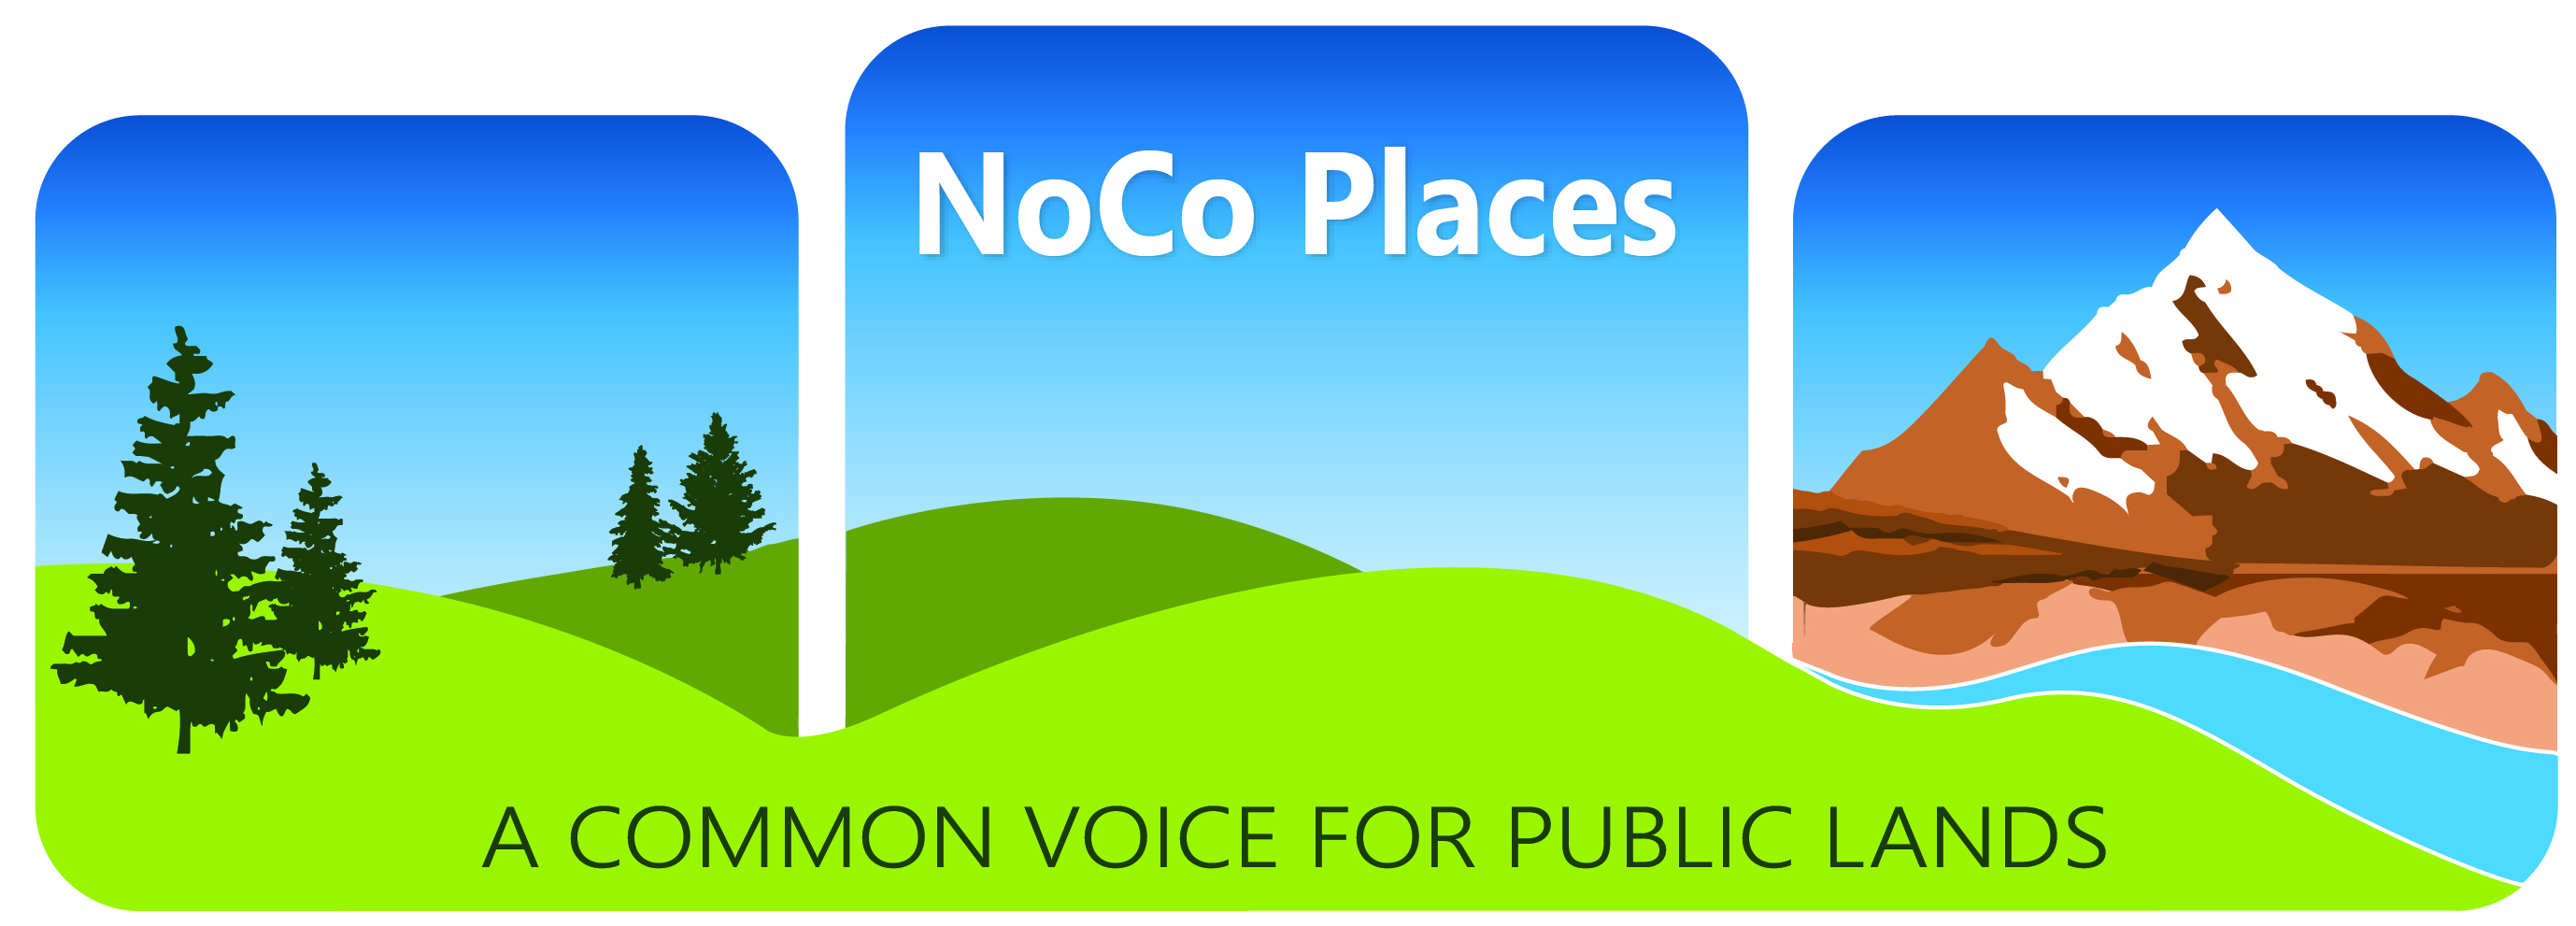 NoCo Places. A common voice for public lands.